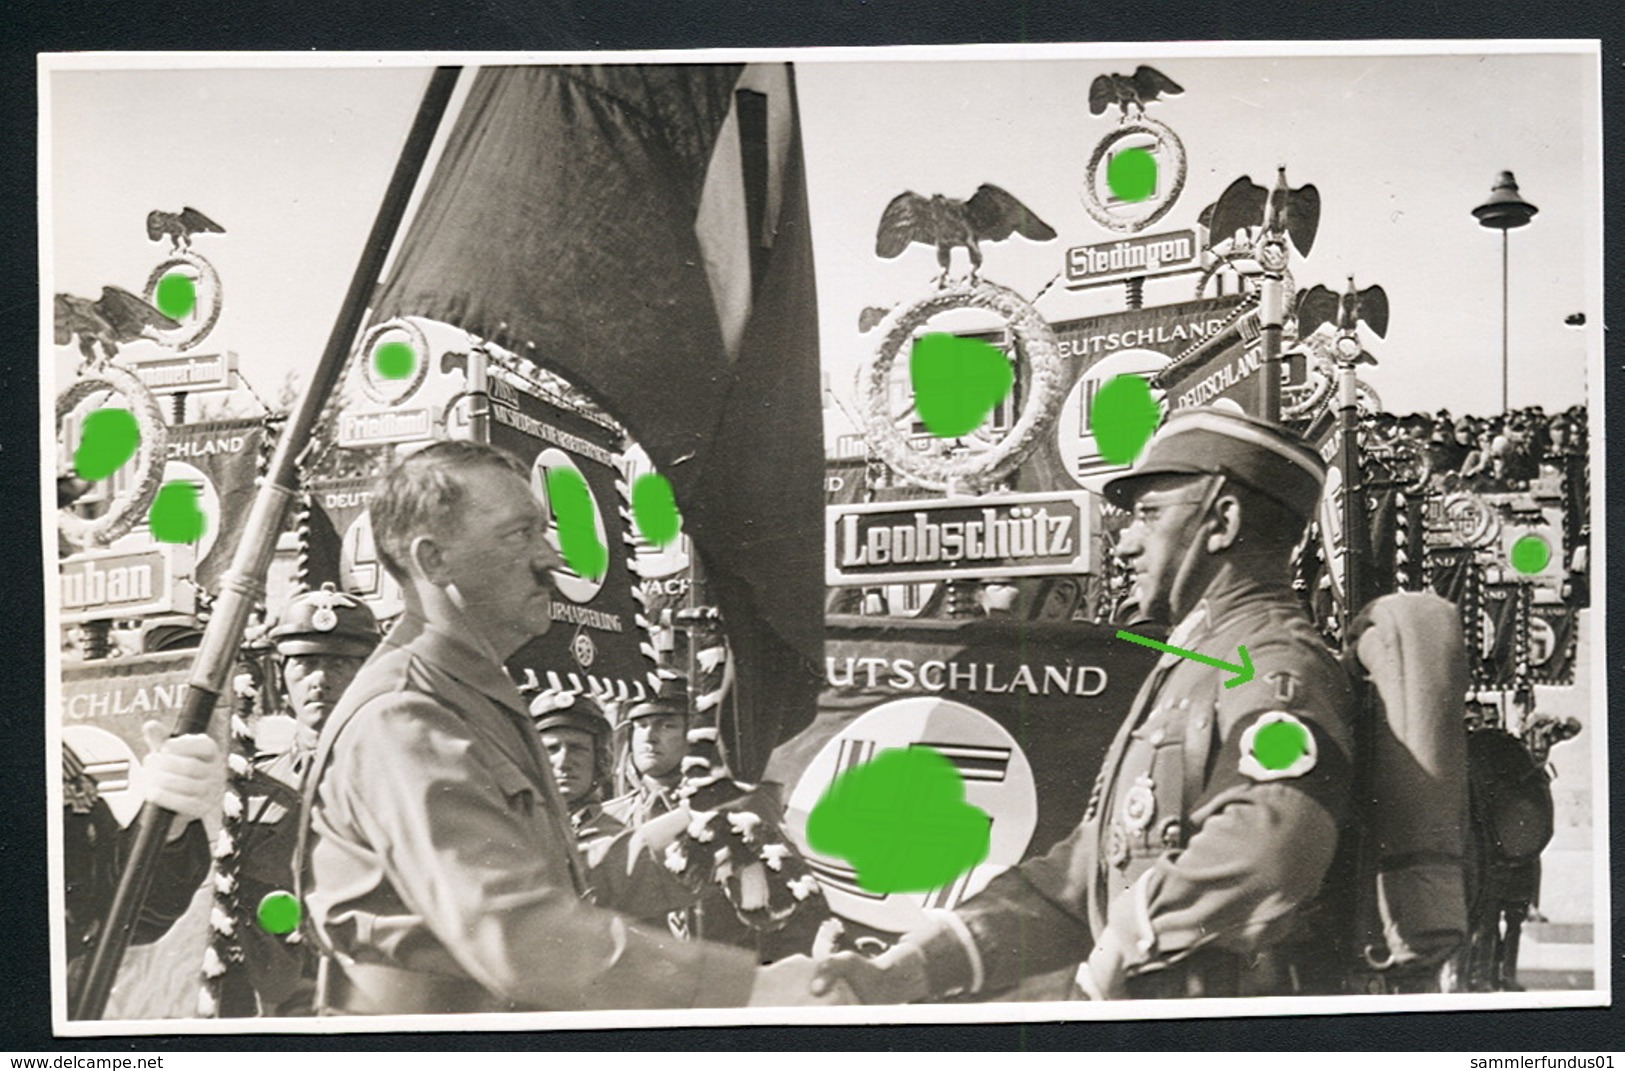 Foto AK/CP Reichsparteitag Nürnberg Hitler  Propaganda  Nazi  Ungel/uncirc. 1933-38   Erhaltung/Cond. 2  Nr. 00586 - Guerre 1939-45